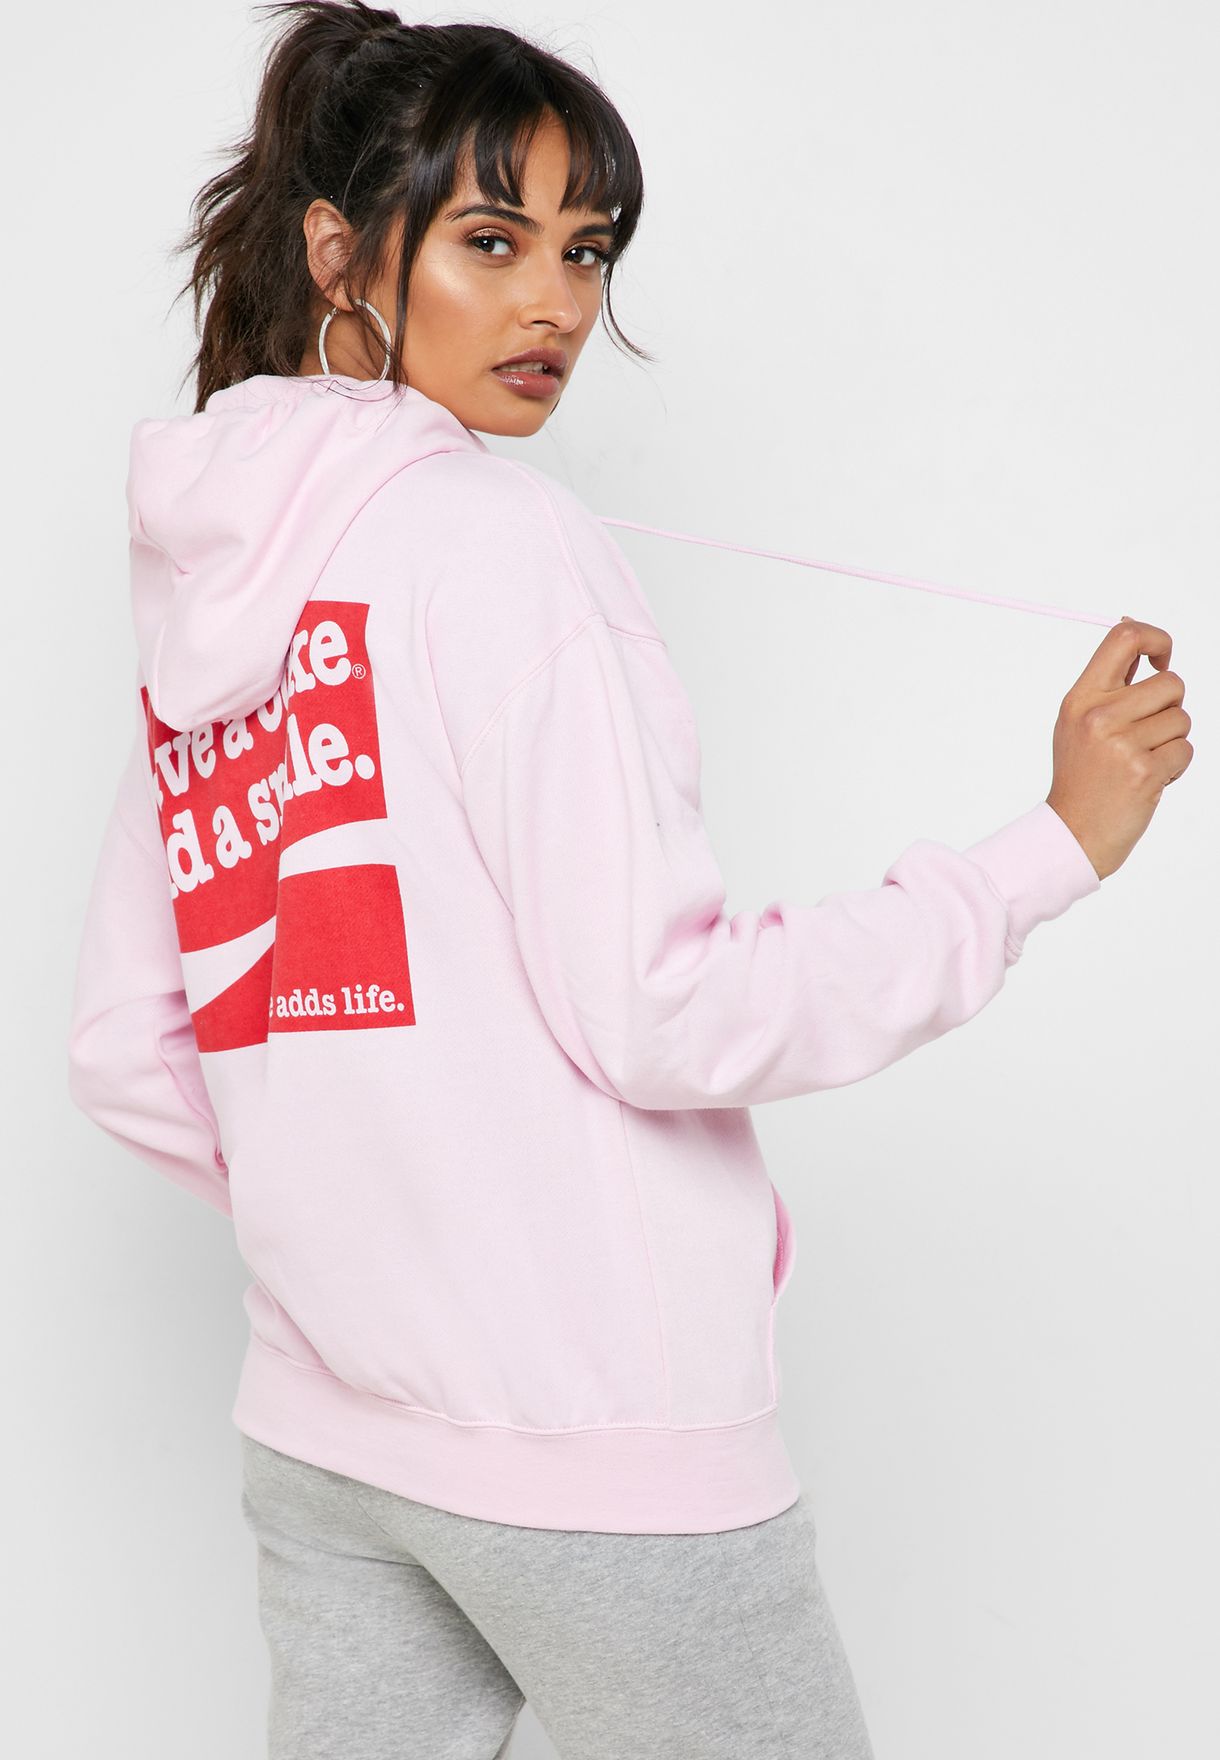 pink coke sweatshirt